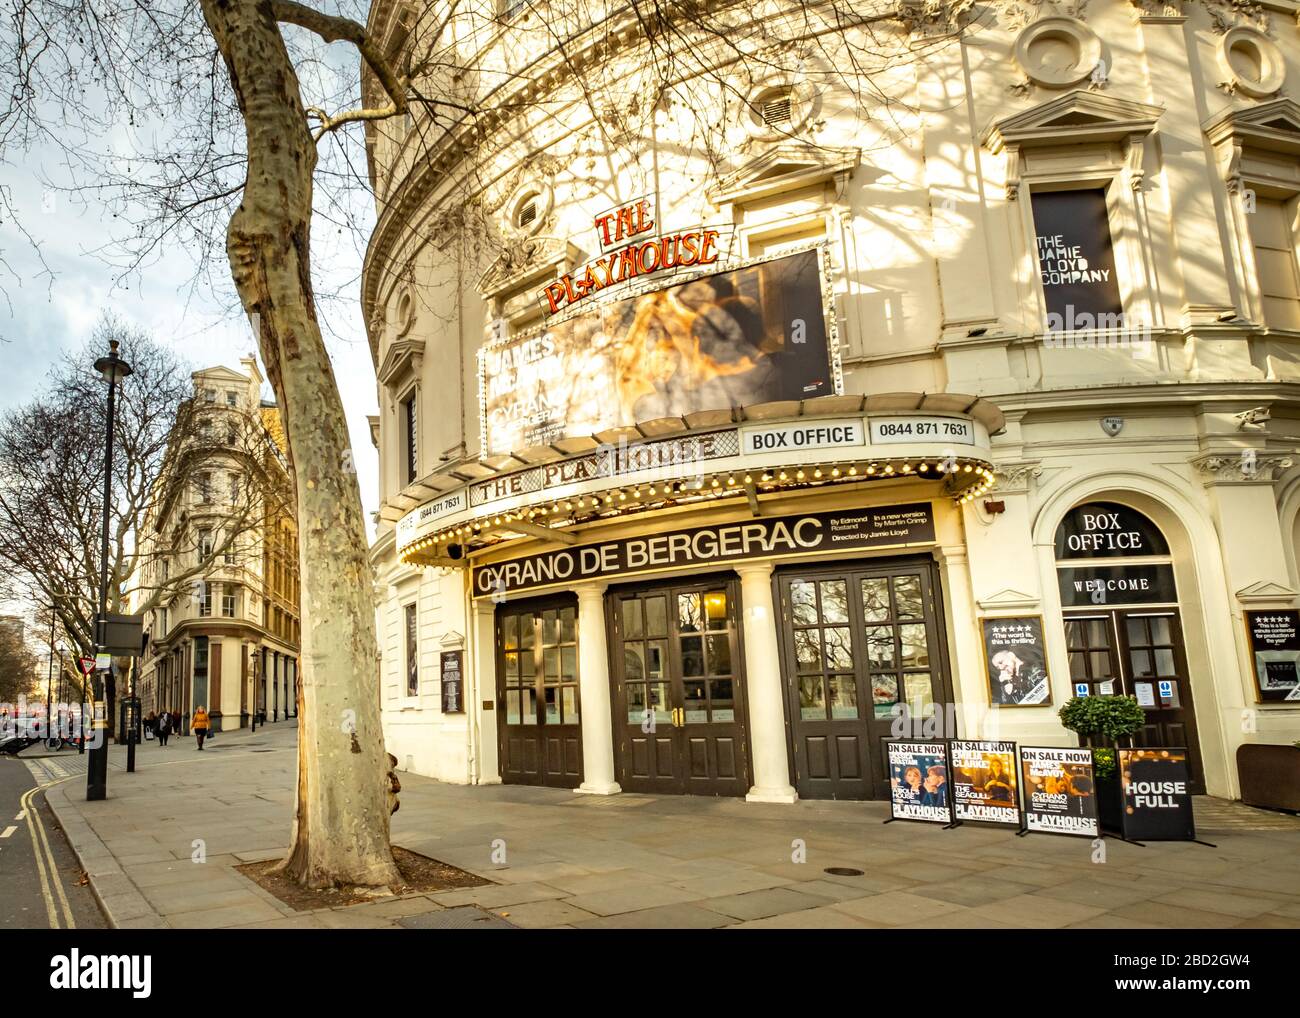 LONDRES- MARS 2019: Théâtre Playhouse près de Trafalgar Square dans le West End de Londres. Actuellement montrant la Cyrano de Bergerac avec James McAvoy Banque D'Images